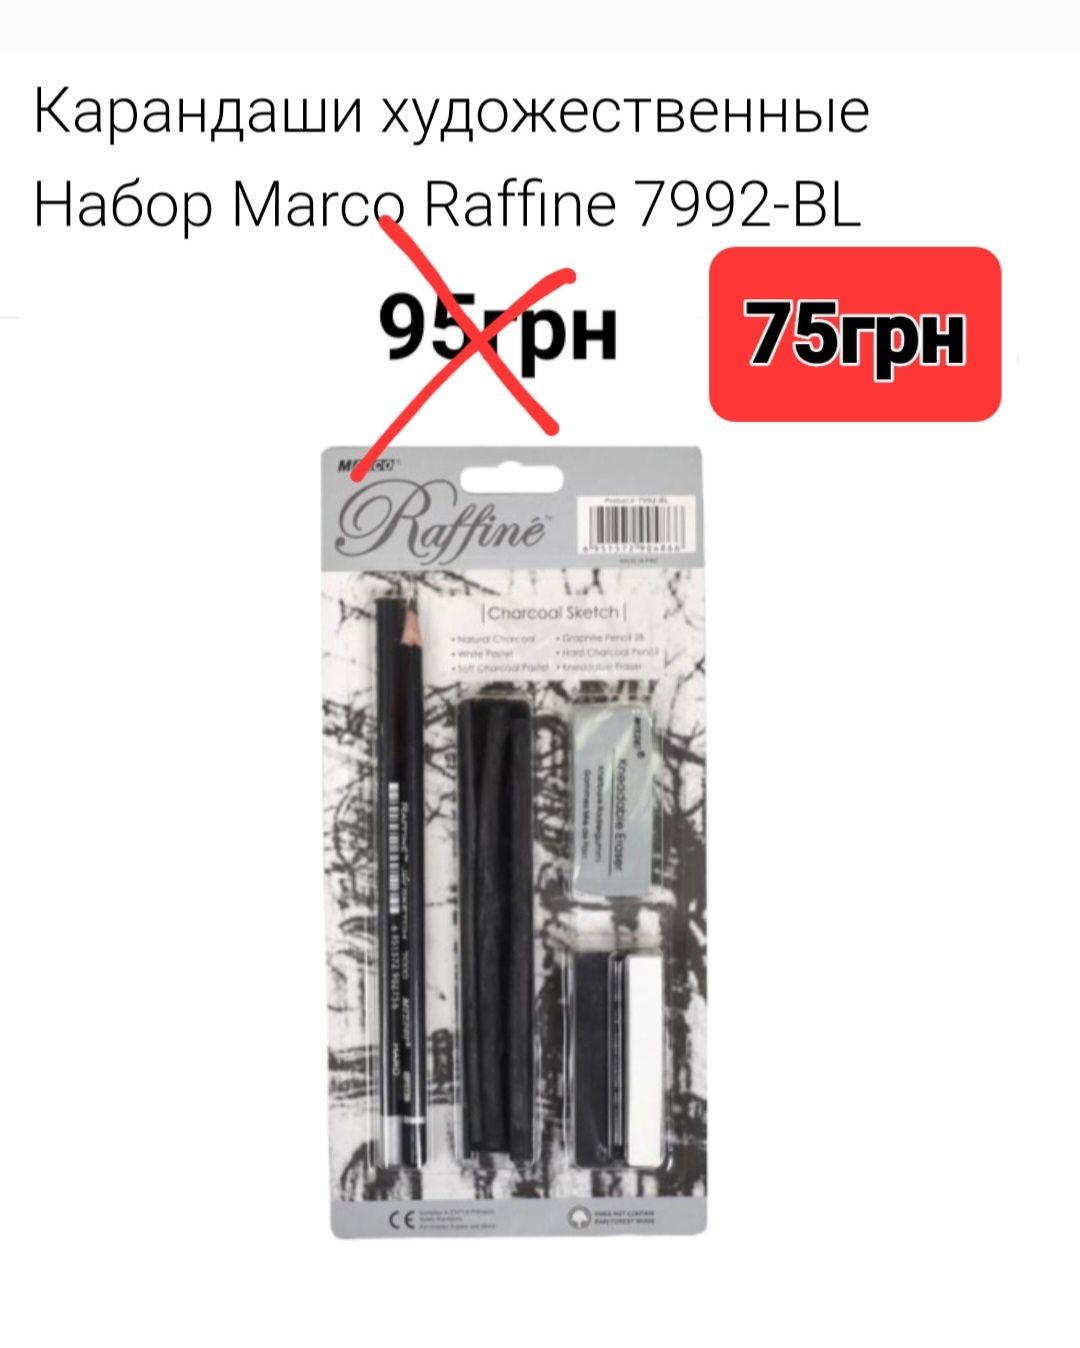 Прості та художні олівці фірми "Marco".